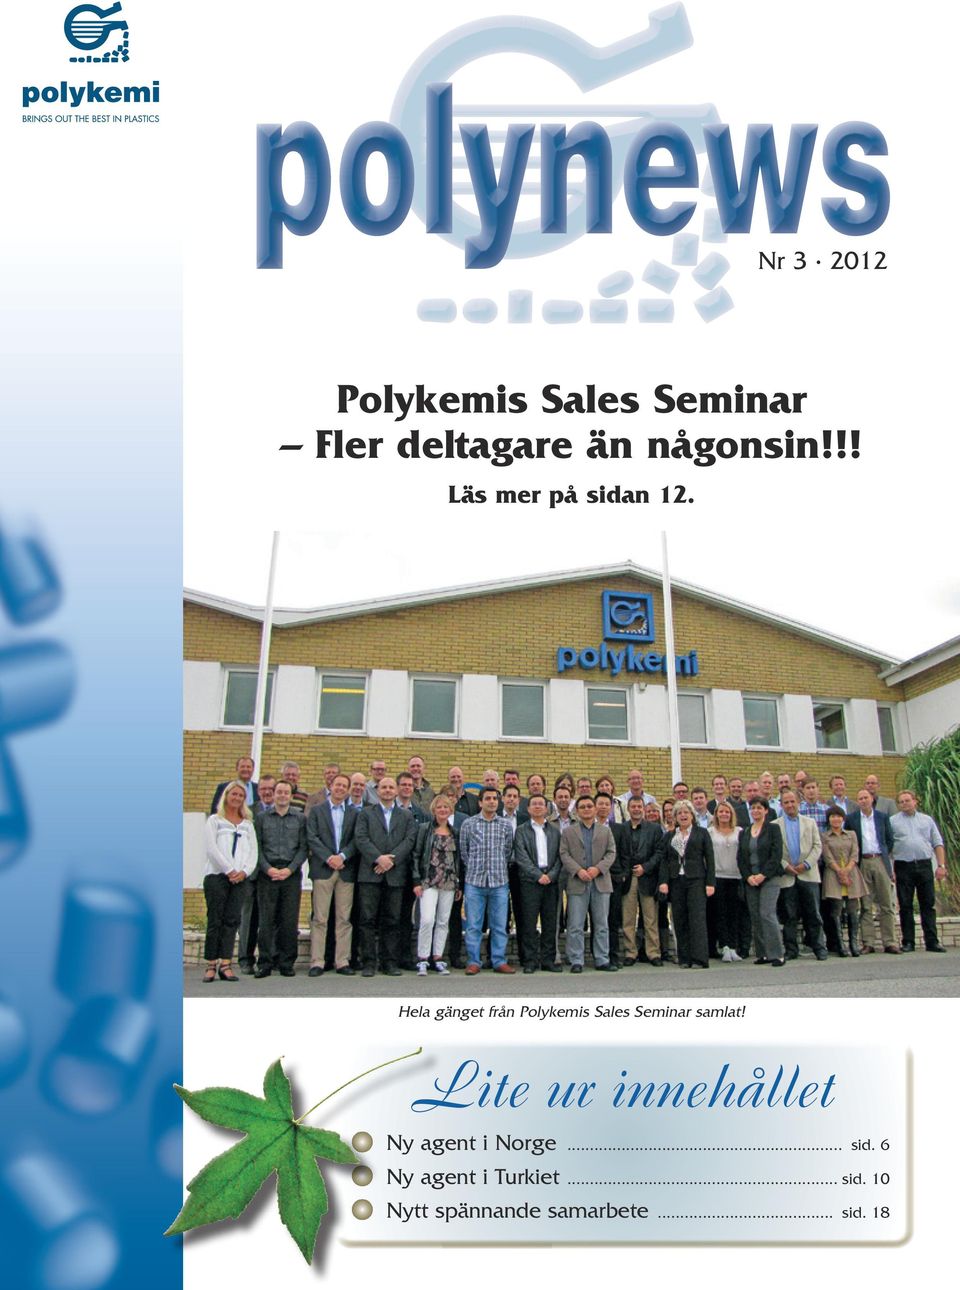 Hela gänget från Polykemis Sales Seminar samlat!